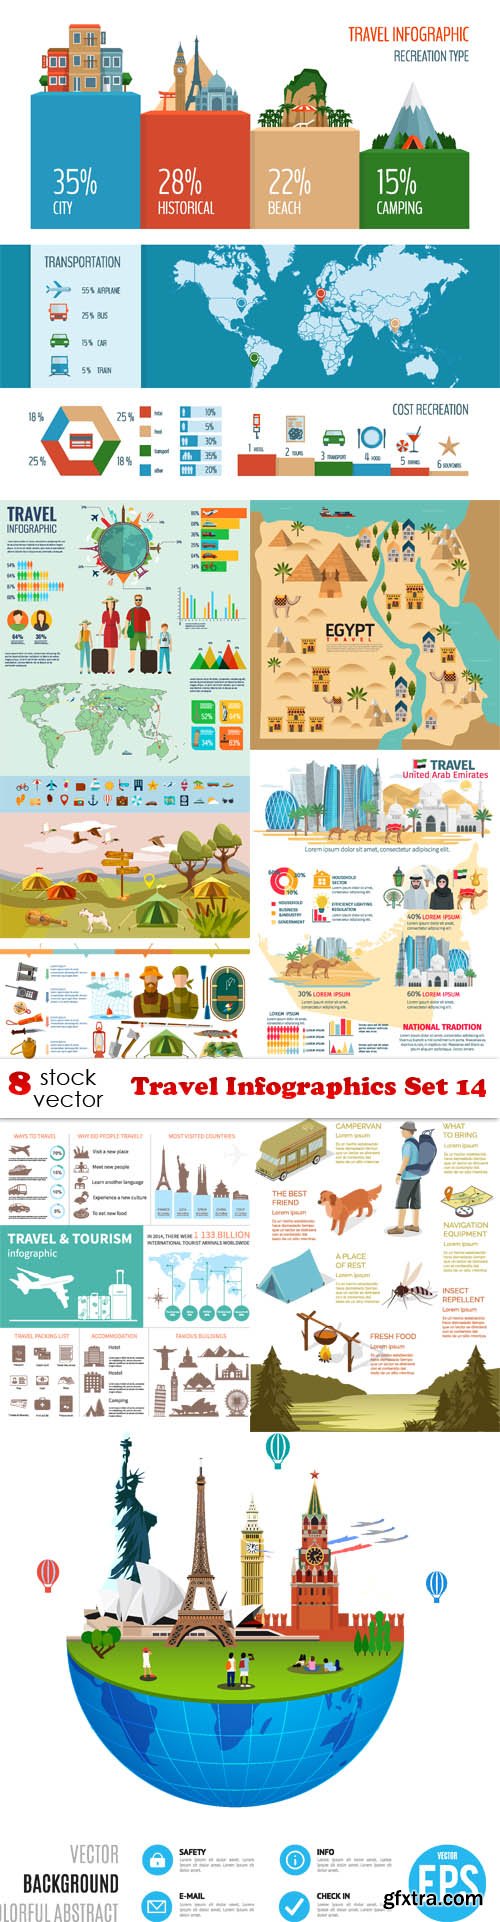 Vectors - Travel Infographics Set 14